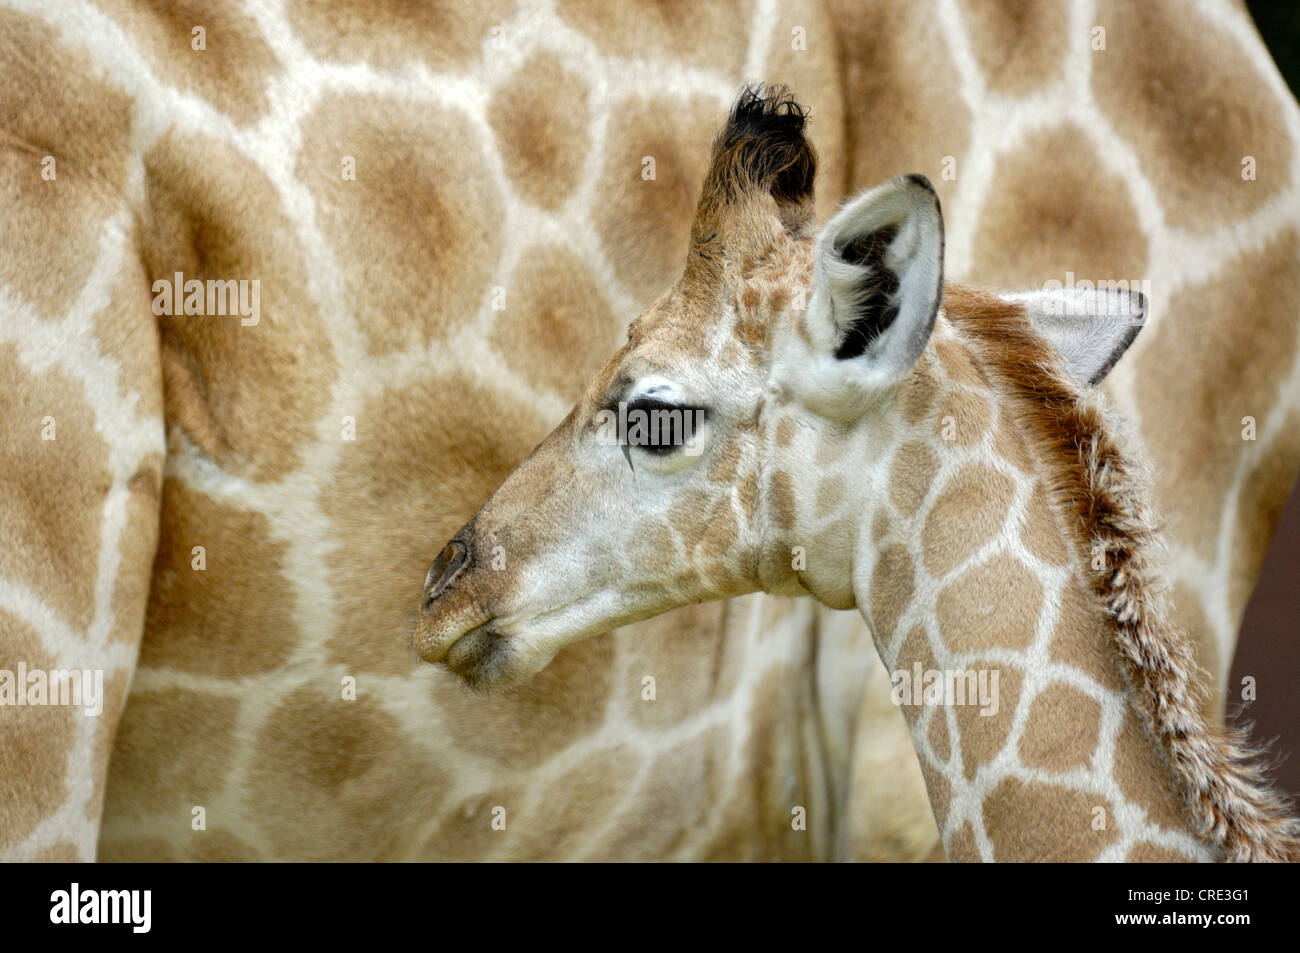 Angolan giraffe, Smoky giraffe (Giraffa camelopardalis angolensis), young with mother Stock Photo